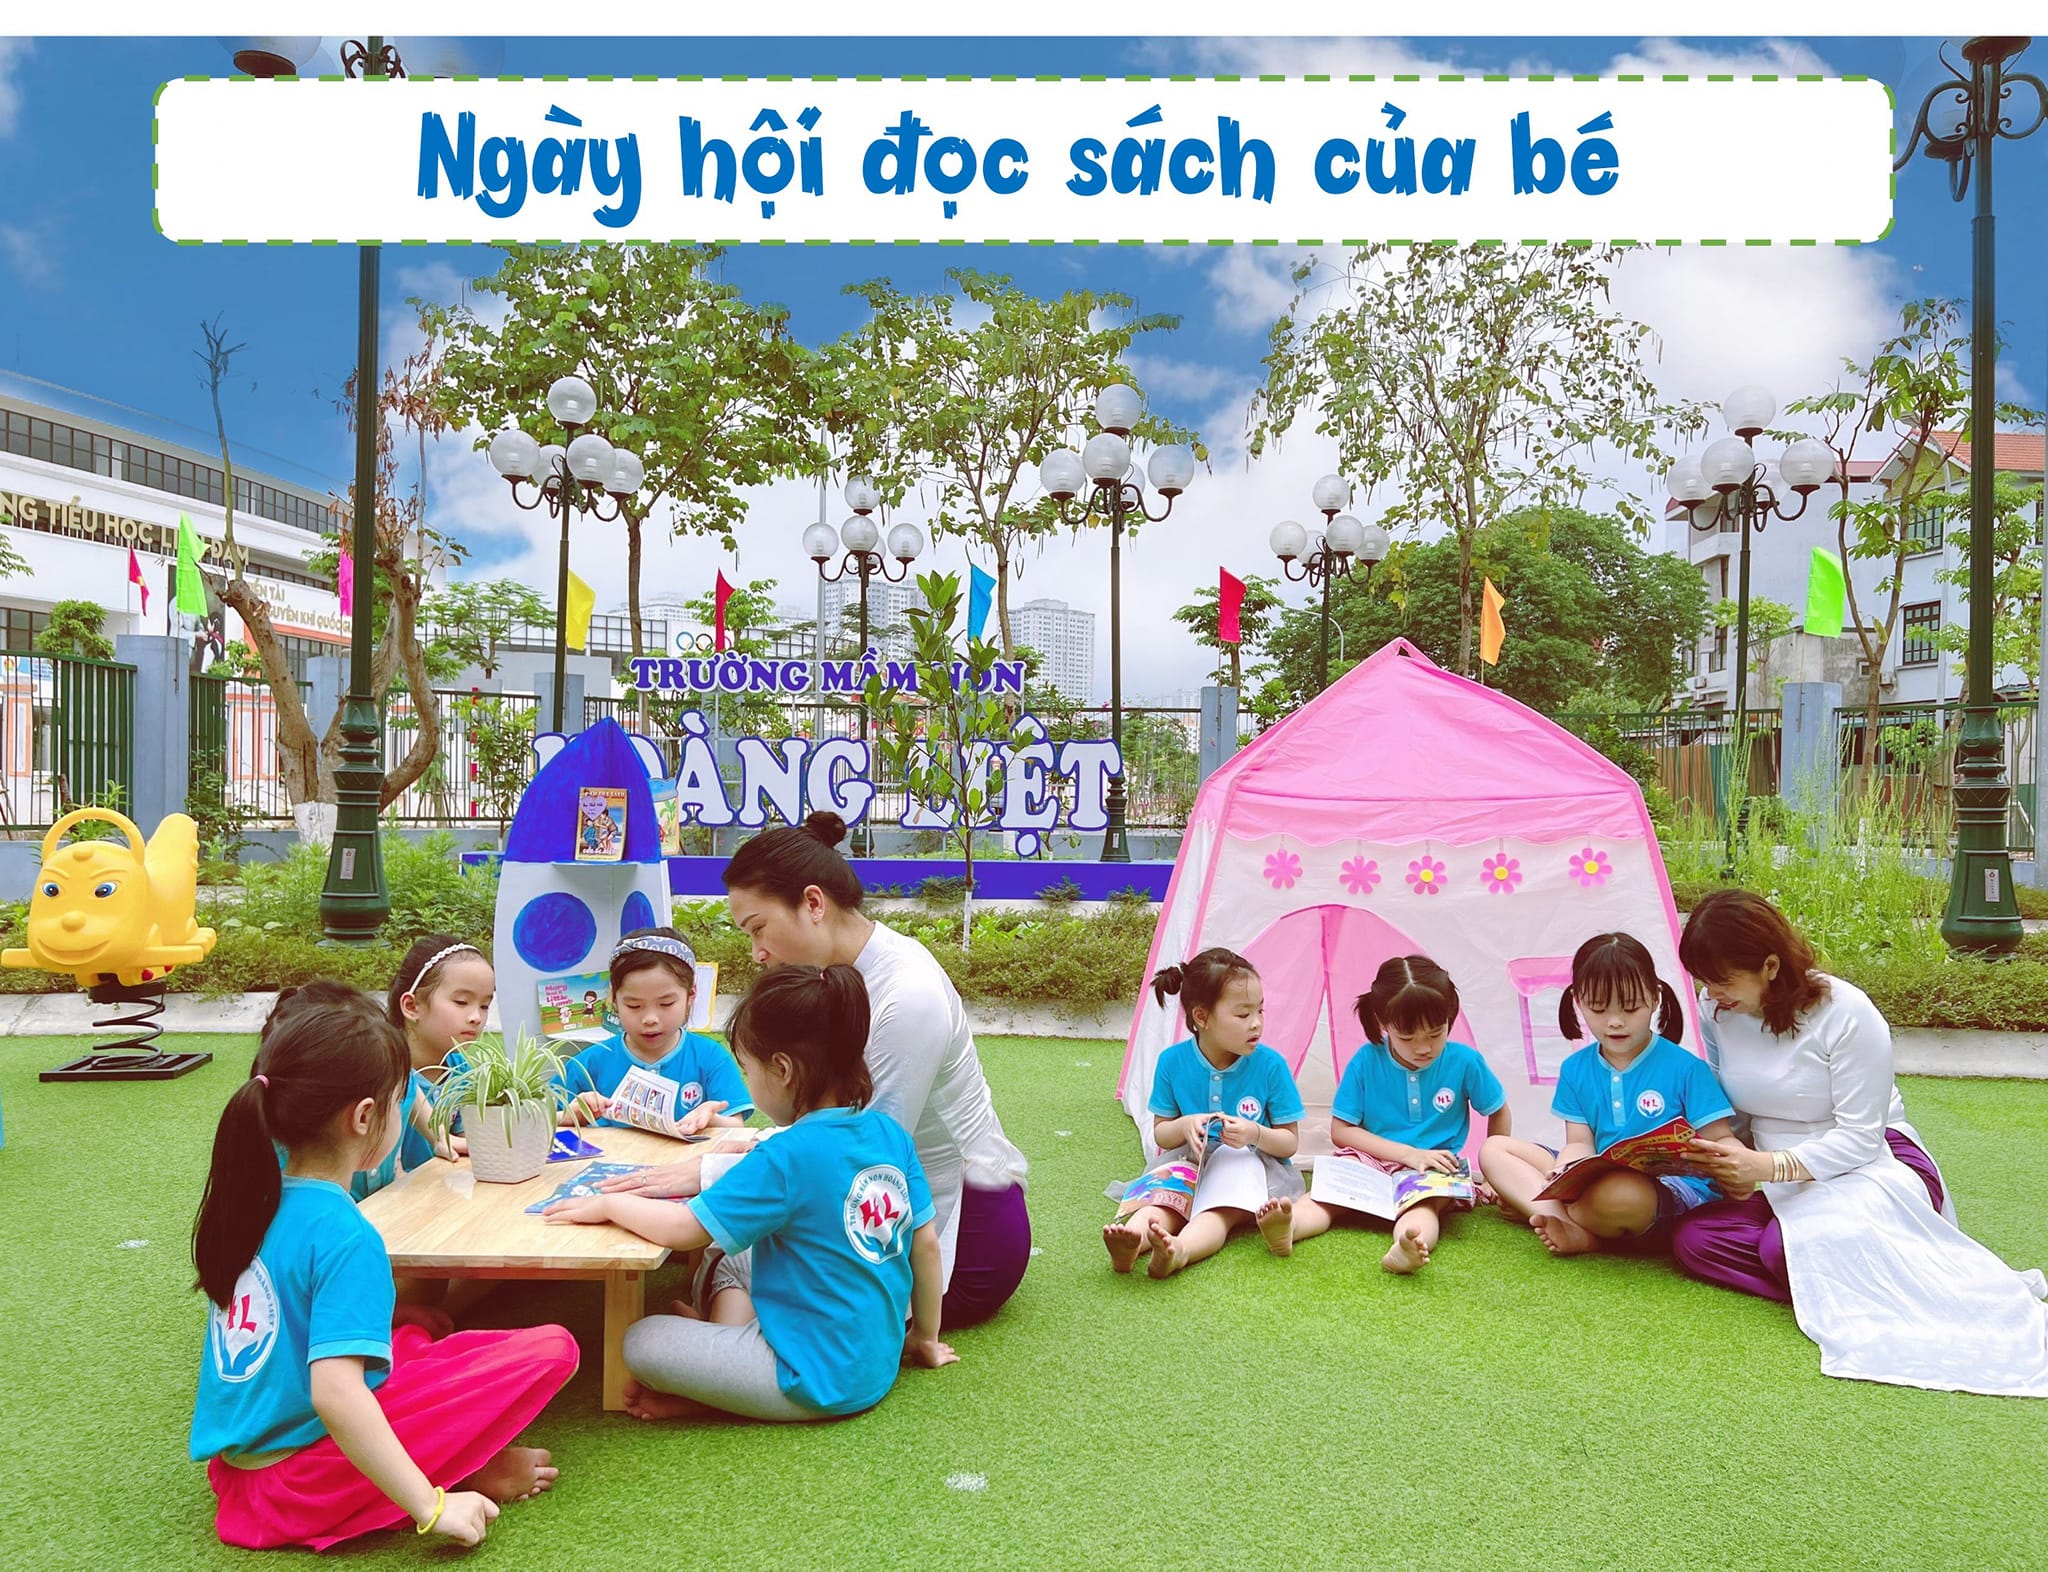 Trường mầm non Trần Phú vinh dự lọt Top 10 trường mầm non công lập nổi tiếng nhất quận Hoàng Mai, Hà Nội.